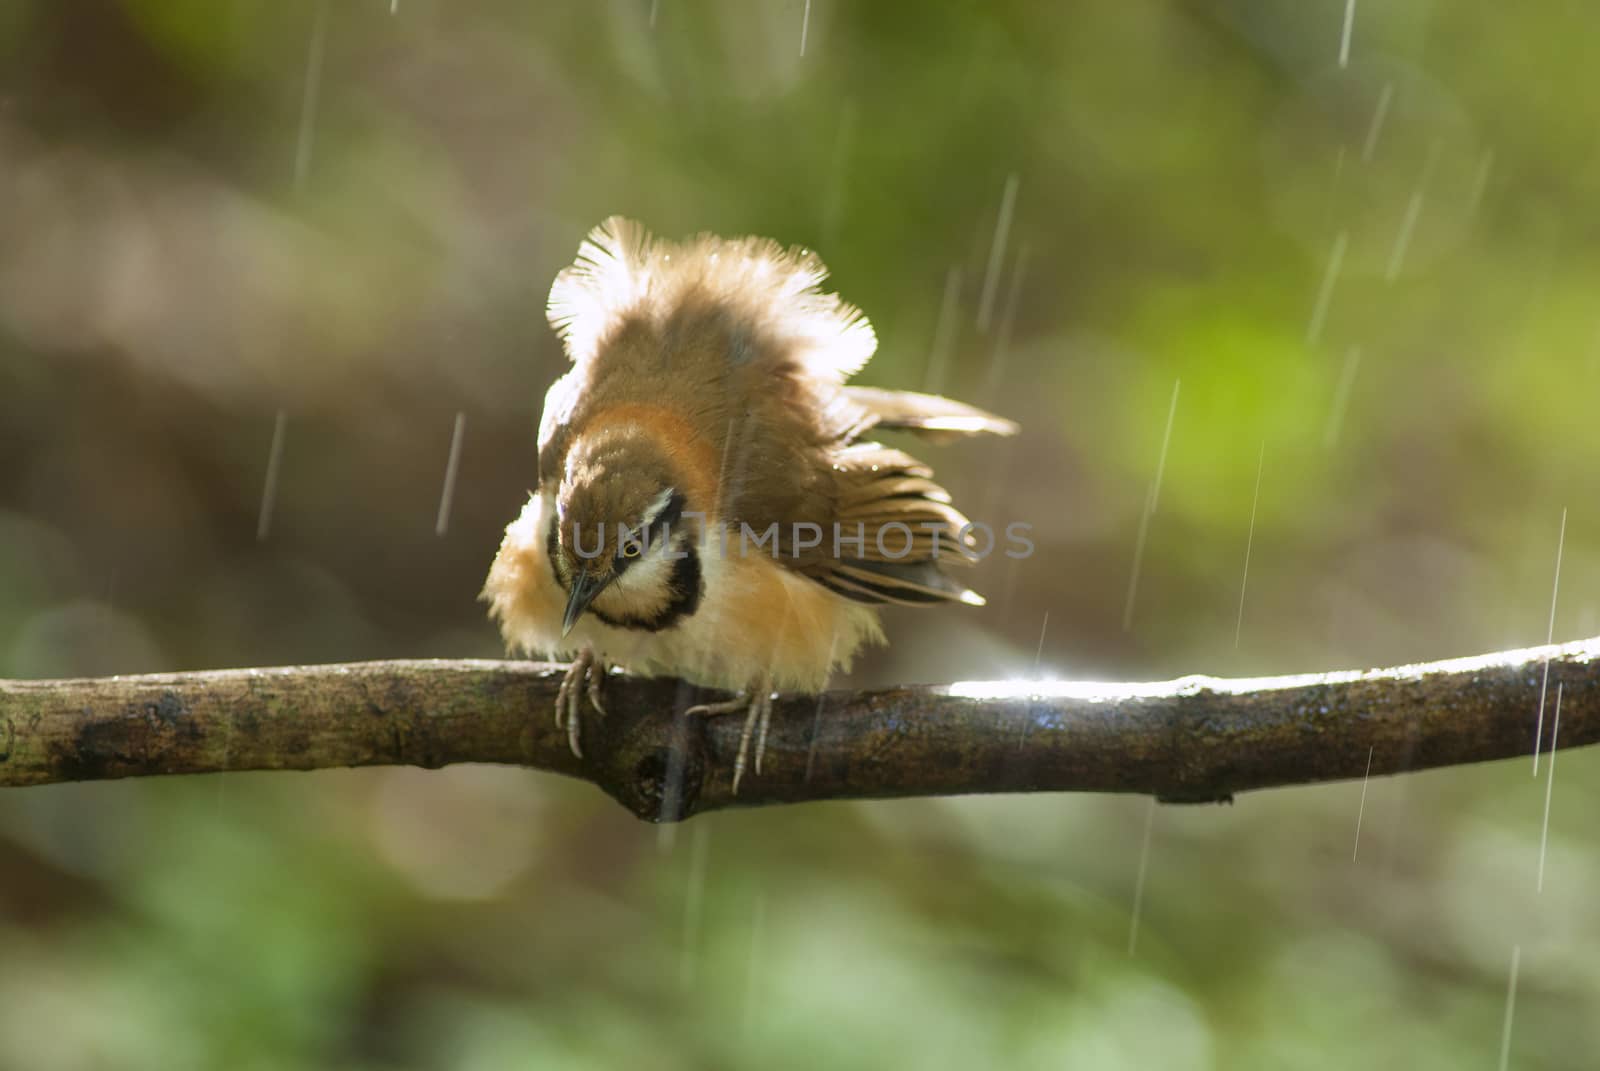 A beautiful bird in the wild Asia.In the rain.